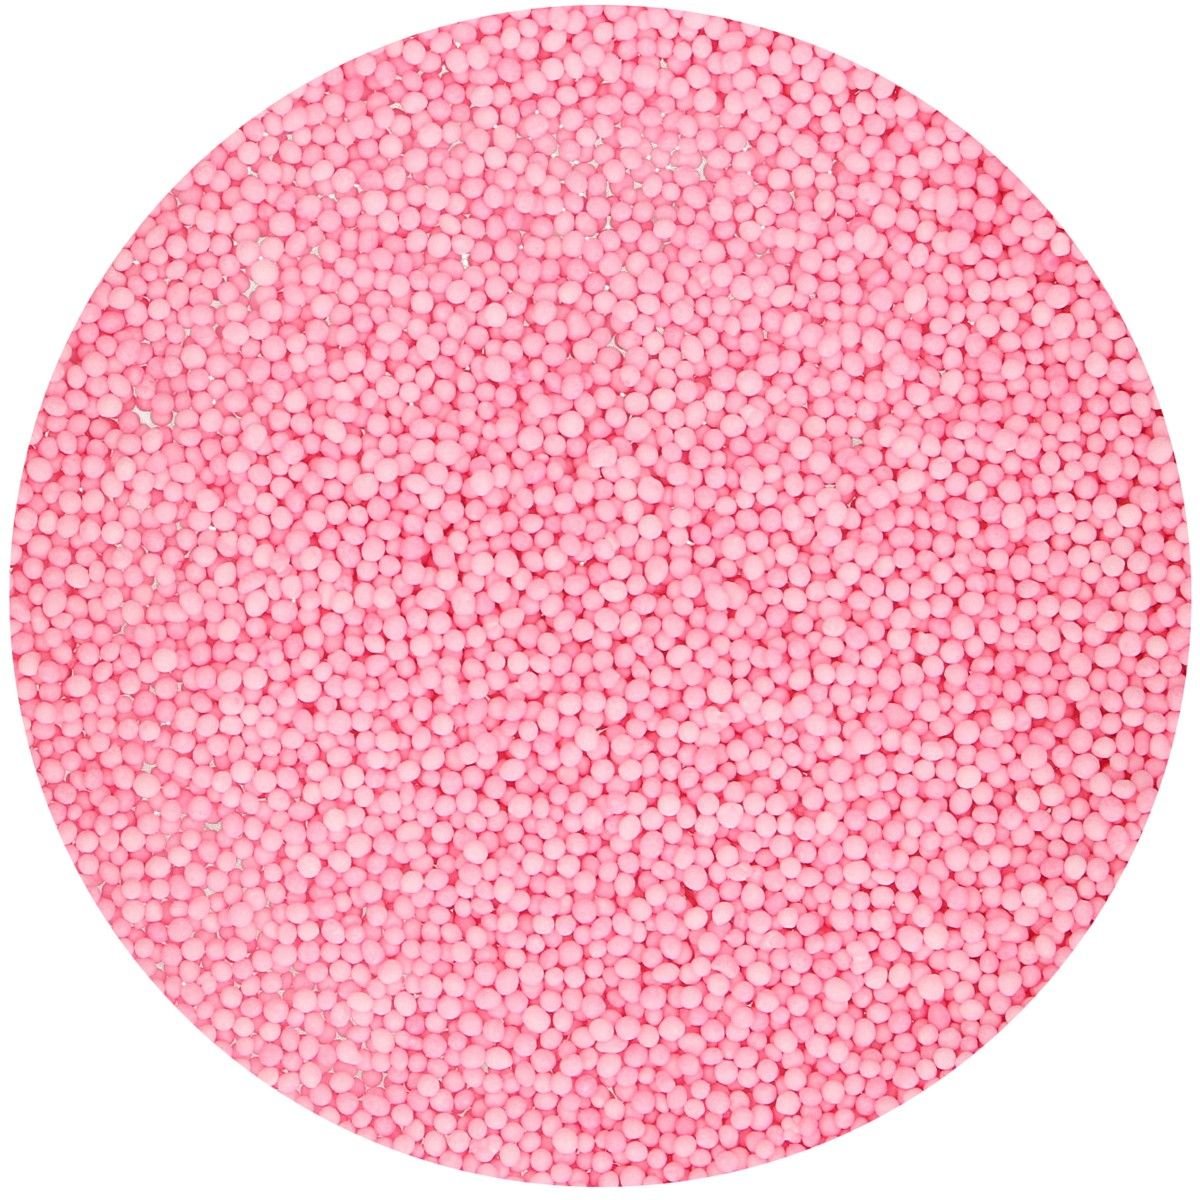 Imagen de producto: Non pareils rosa, 80 g - Funcakes